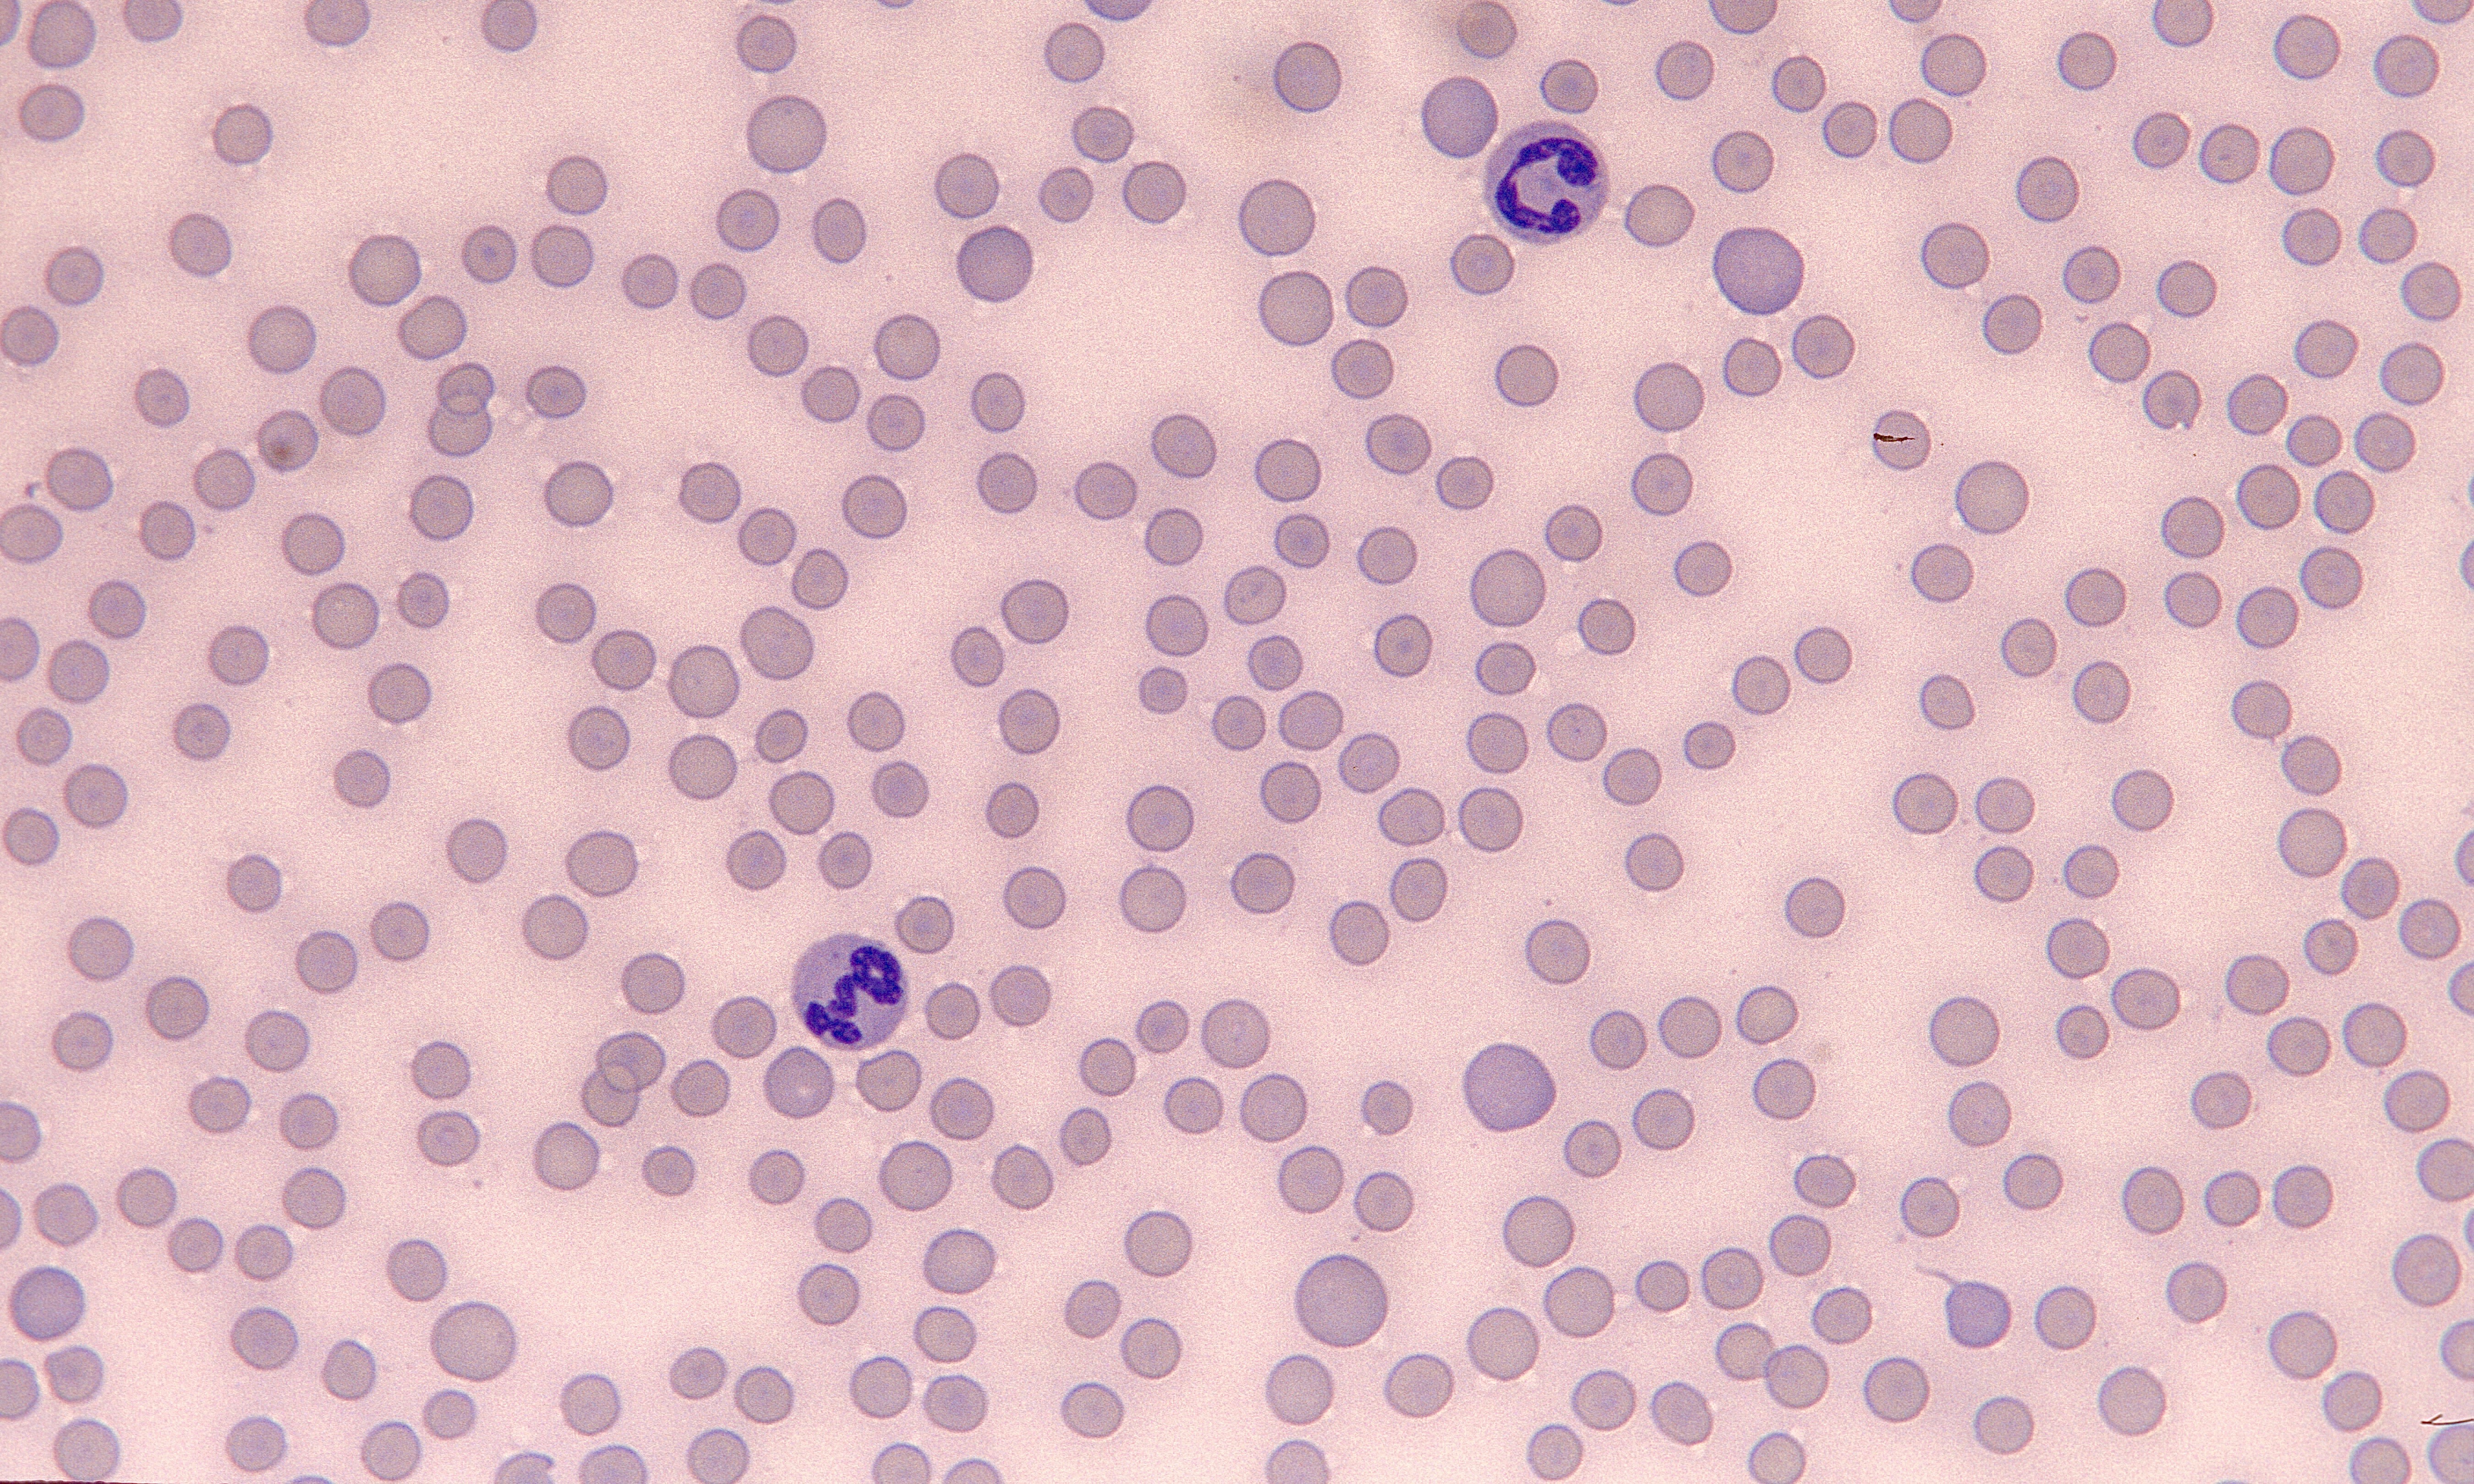 Platelets 11 (Feline 3) - Thrombocytopenia